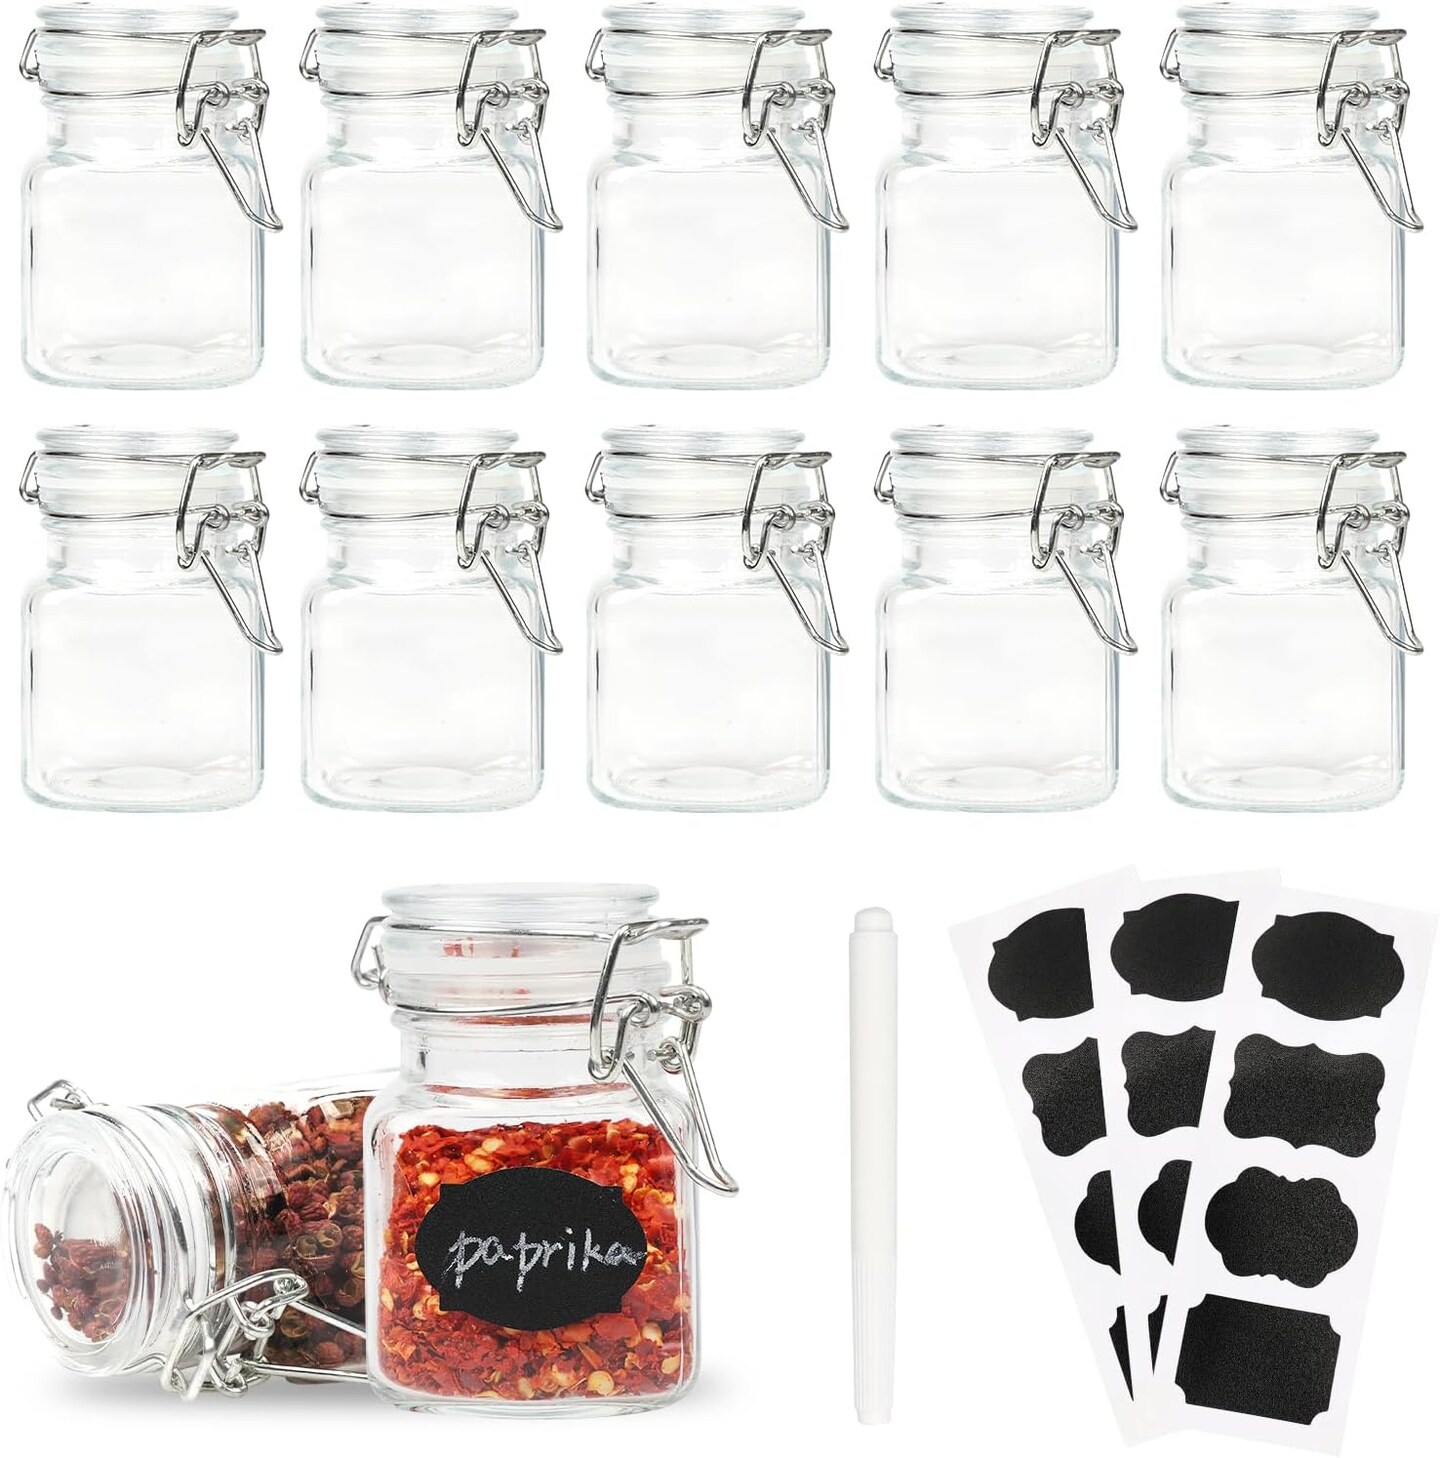 3.4 oz. Mini Glass Jars 12 packs with Lids